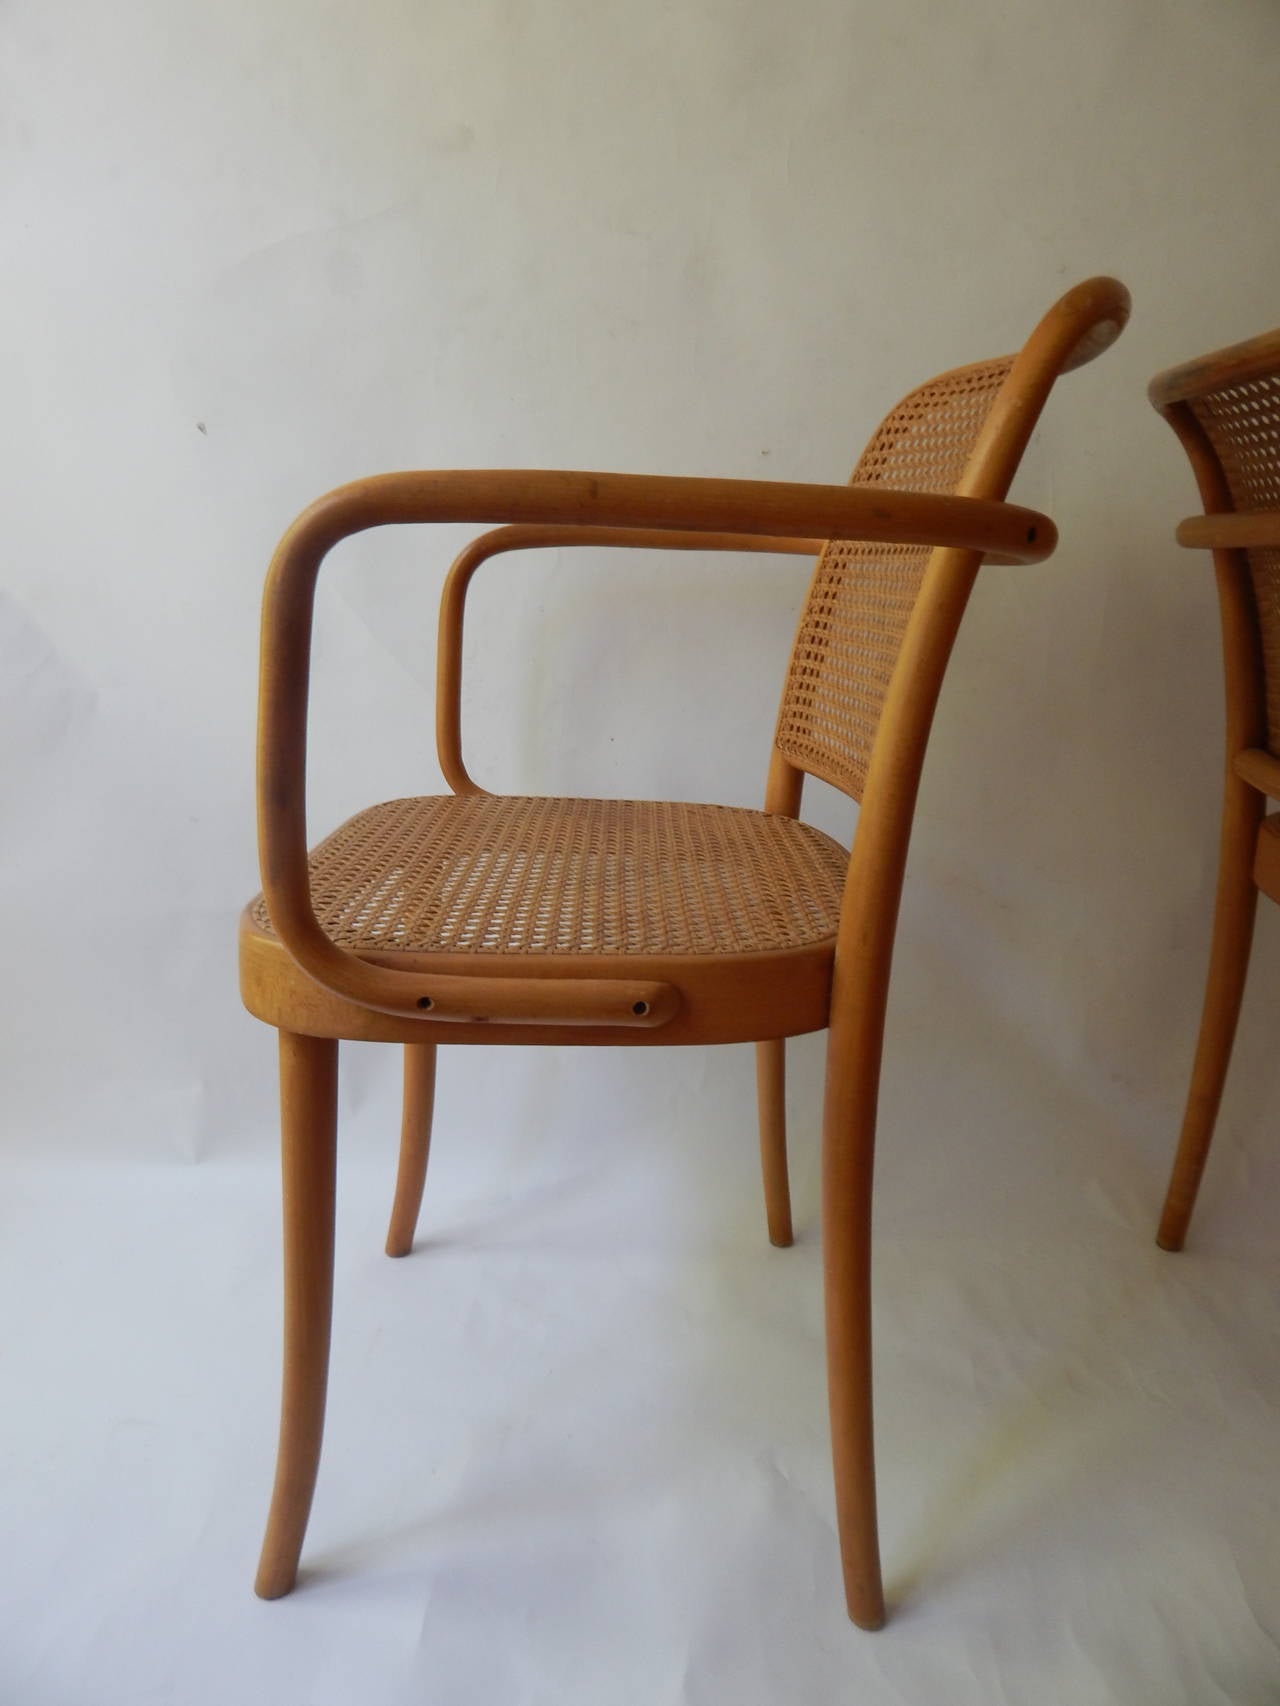 hoffman cane chair